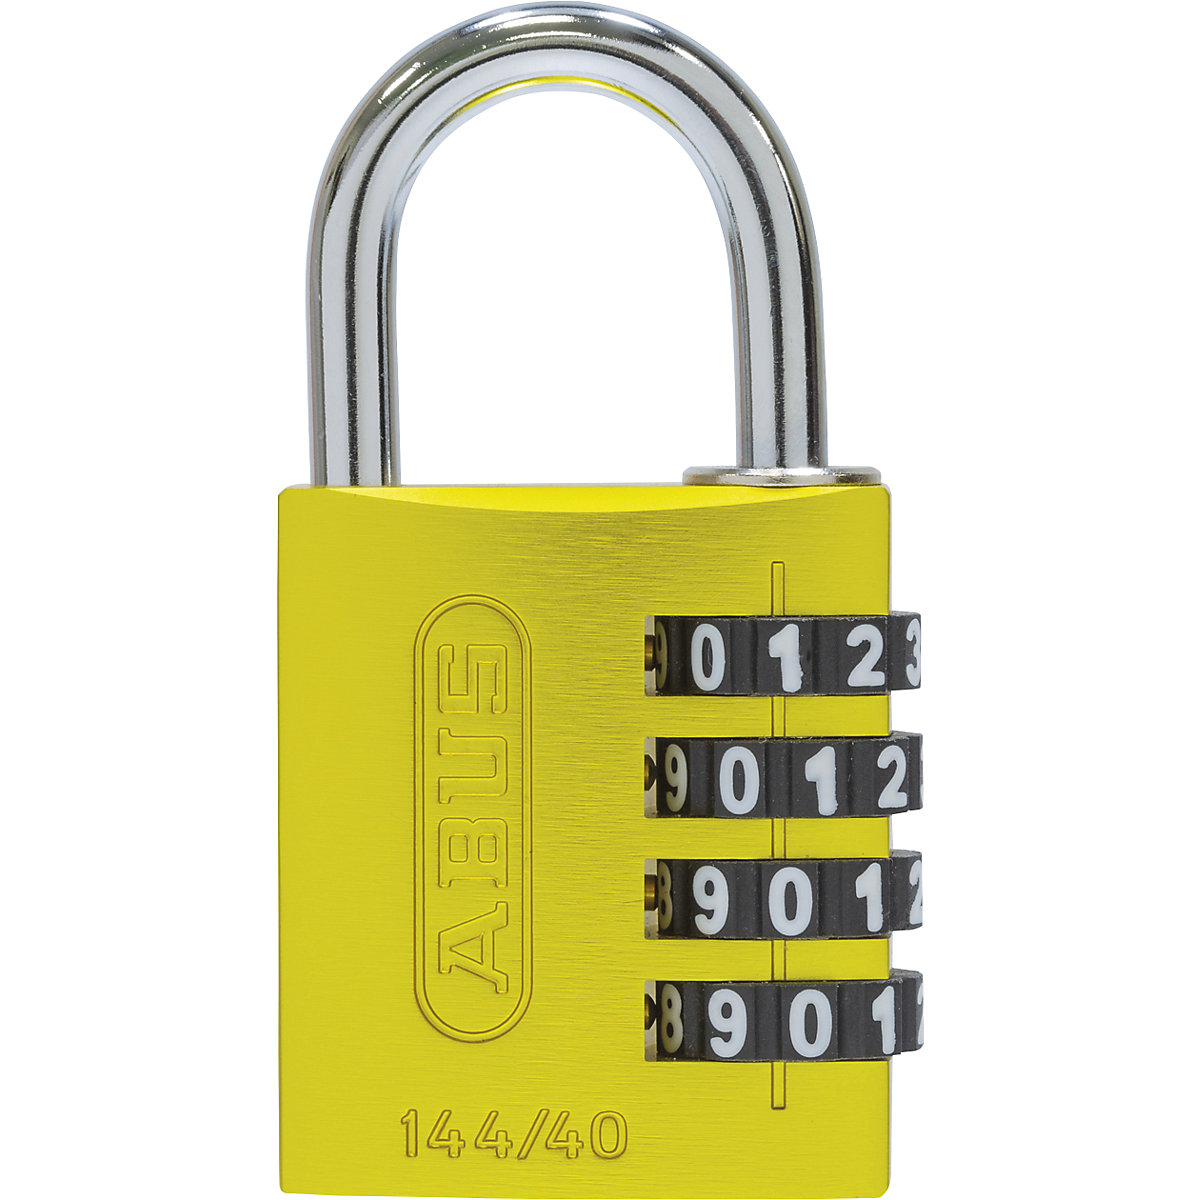 Brava s kombinacijom brojeva, aluminijska – ABUS, 144/40 Lock-Tag, pak. 6 kom., u žutoj boji-3